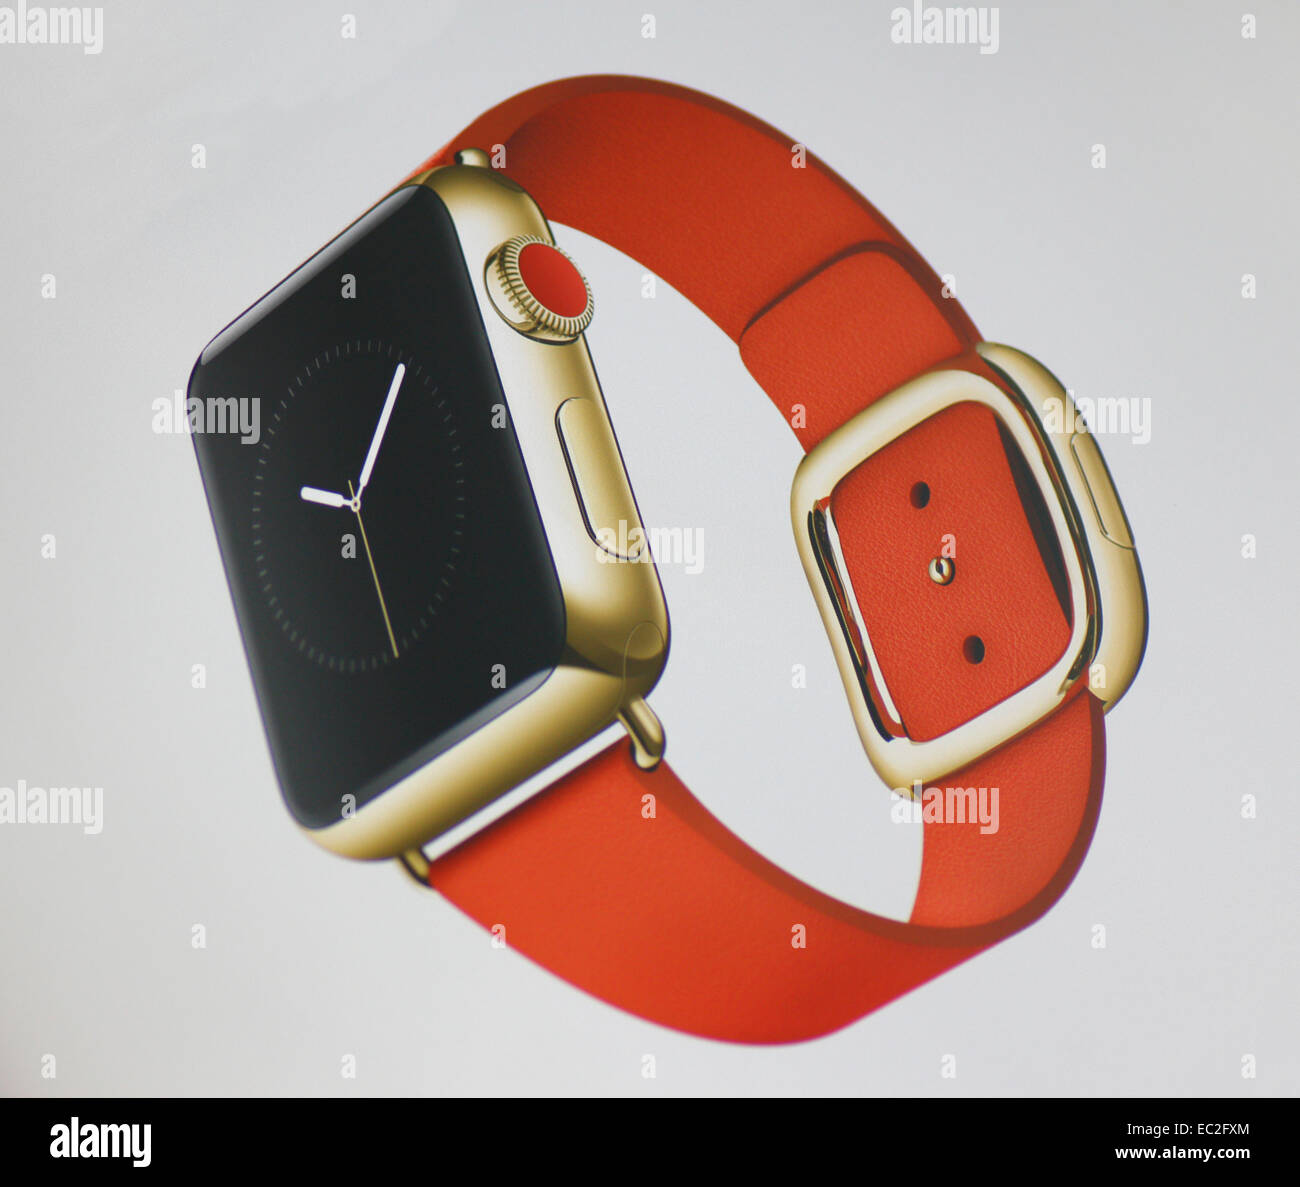 Apple Watch - die Apple Watch Kollektion bietet hochglanzpoliertem Edelstahl und Raum schwarzen Edelstahlgehäuse. Die dis Stockfoto